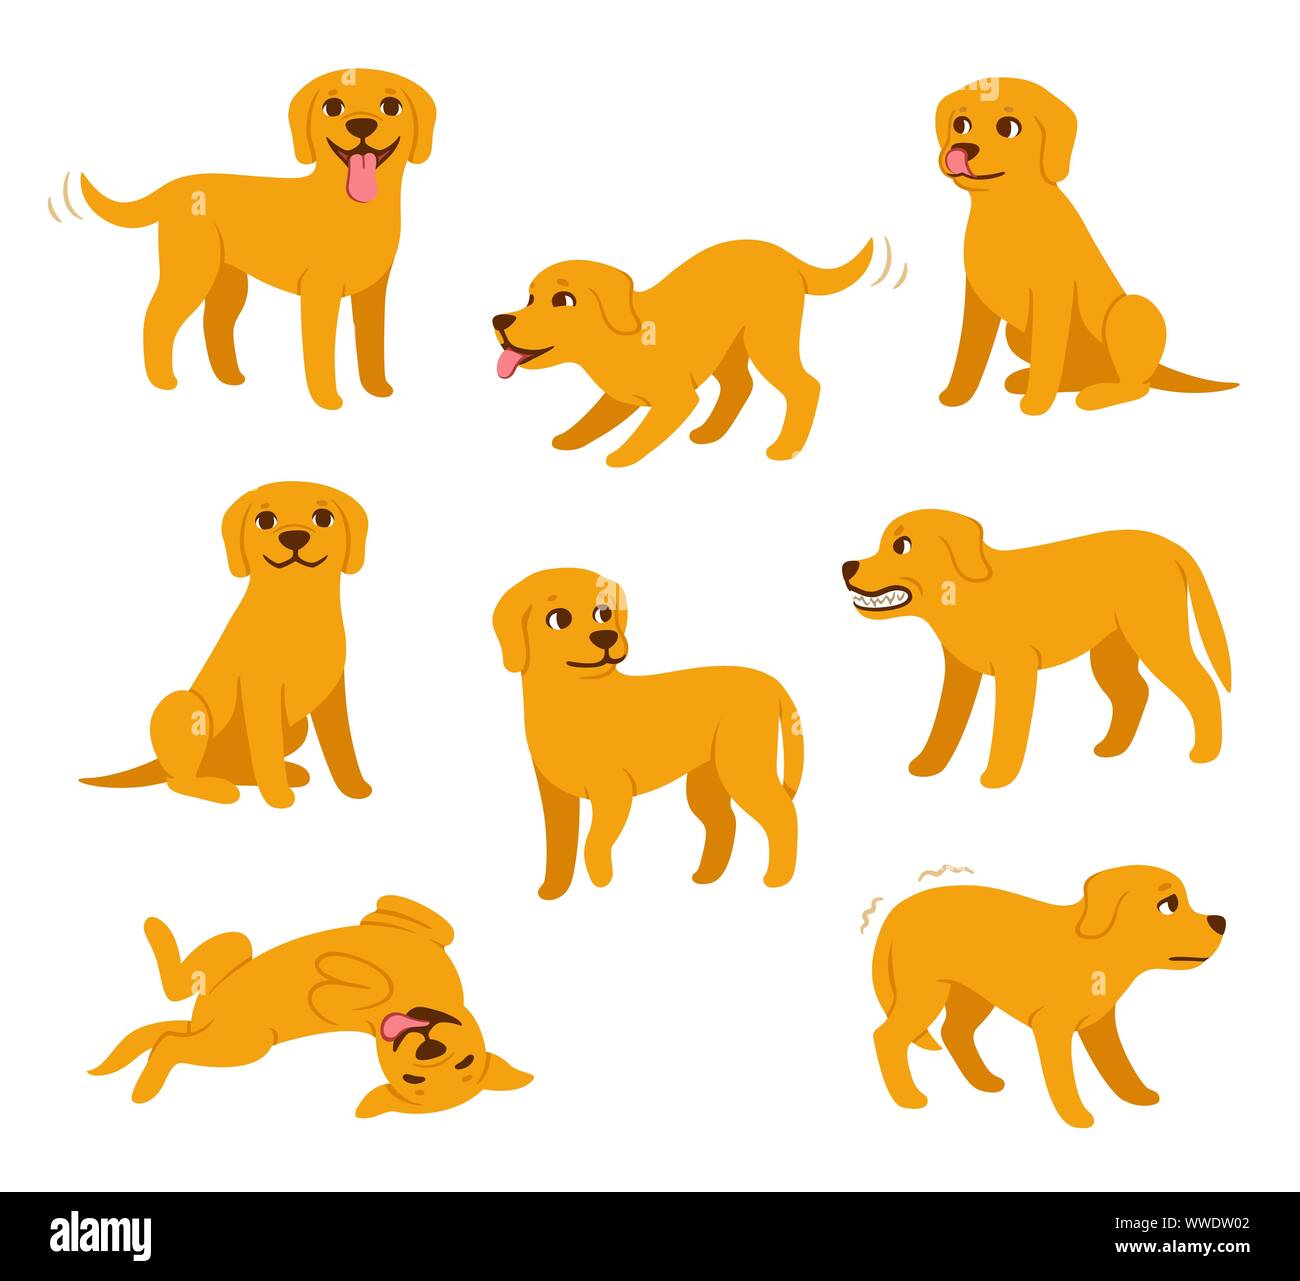 Cartoon hund Set mit unterschiedlichen Posen und Emotionen. Hund Verhalten,  Körpersprache und Gesichtsausdruck. Niedlichen gelben Labrador Retriever in  einfachen Cartoon Stock-Vektorgrafik - Alamy